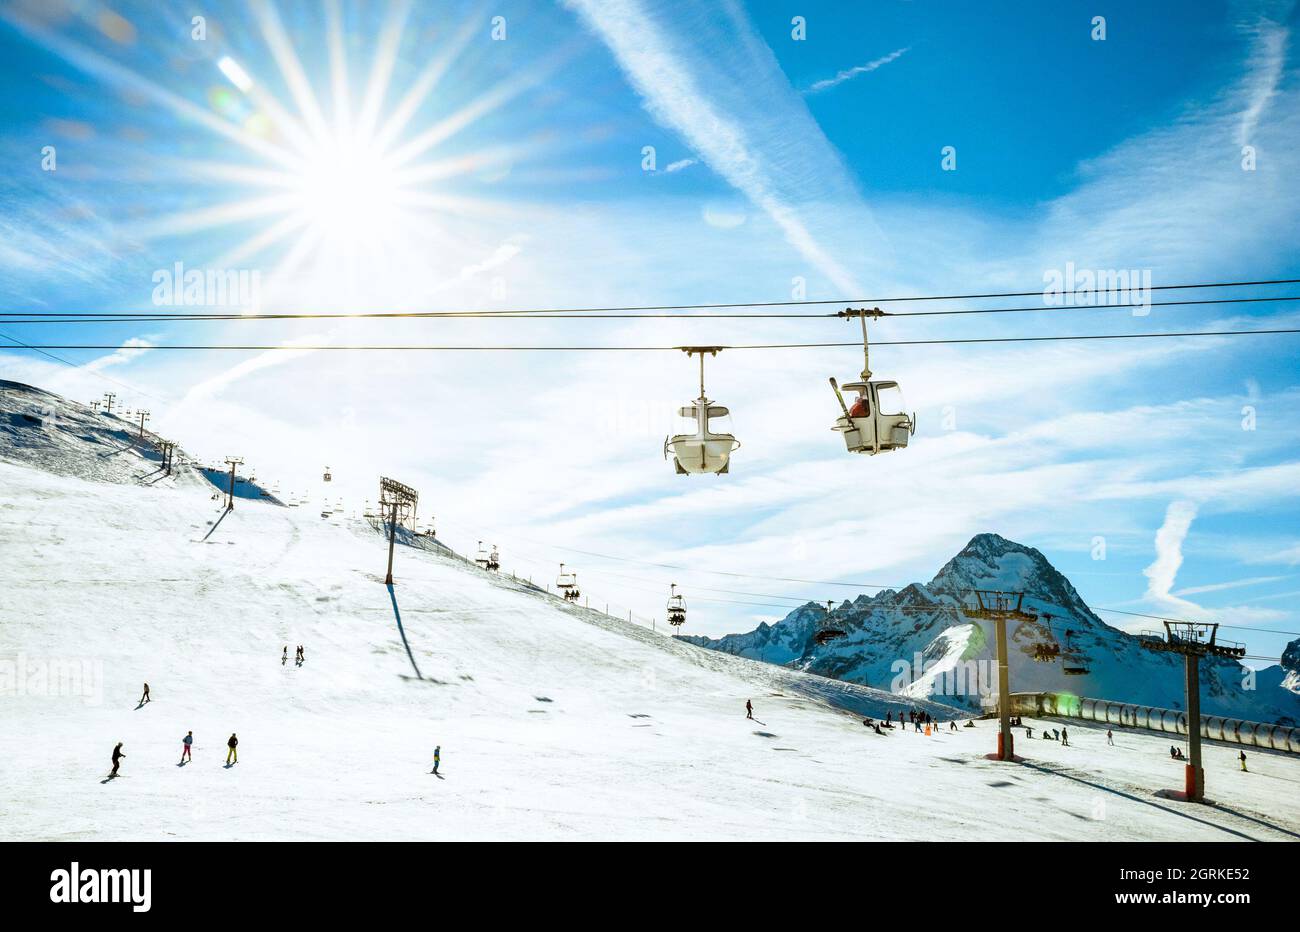 Skigebiet Les Deux Alpes 3600 Gletscher und Sessellift in Französische Alpen - Winter Urlaub und Reisen Sport Konzept - Snowboard Saison Eröffnung und Menschen Stockfoto